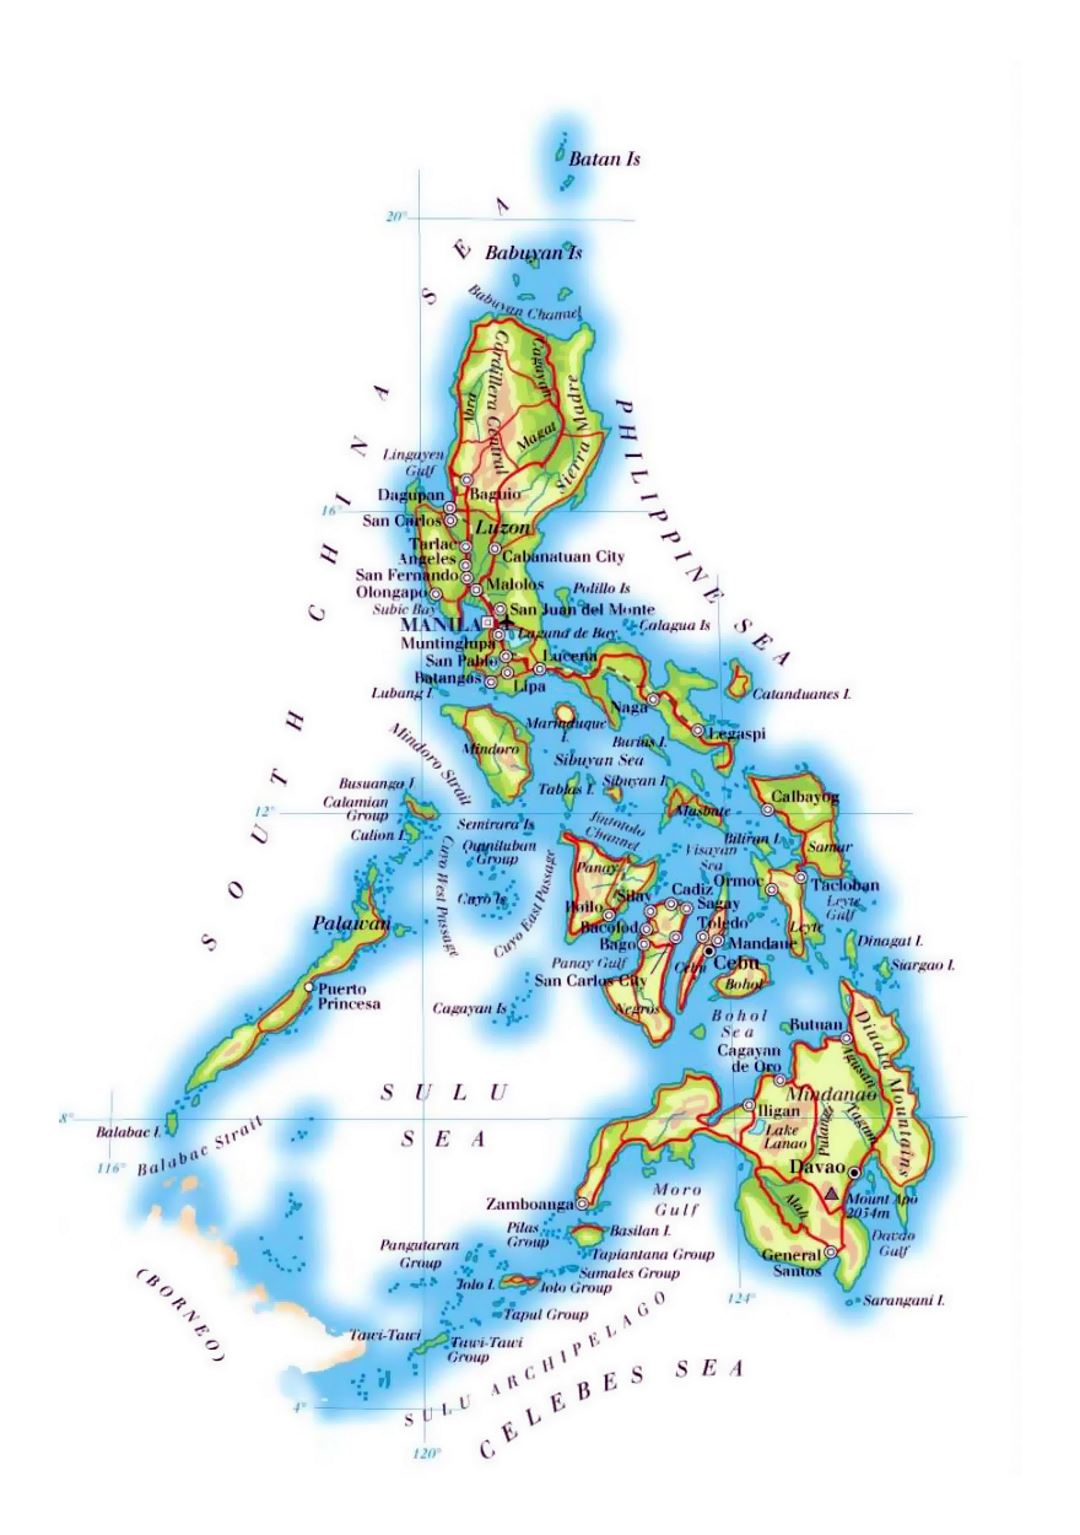 Детальная карта высот Филиппин с дорогами, железными дорогами, крупными городами и аэропортами